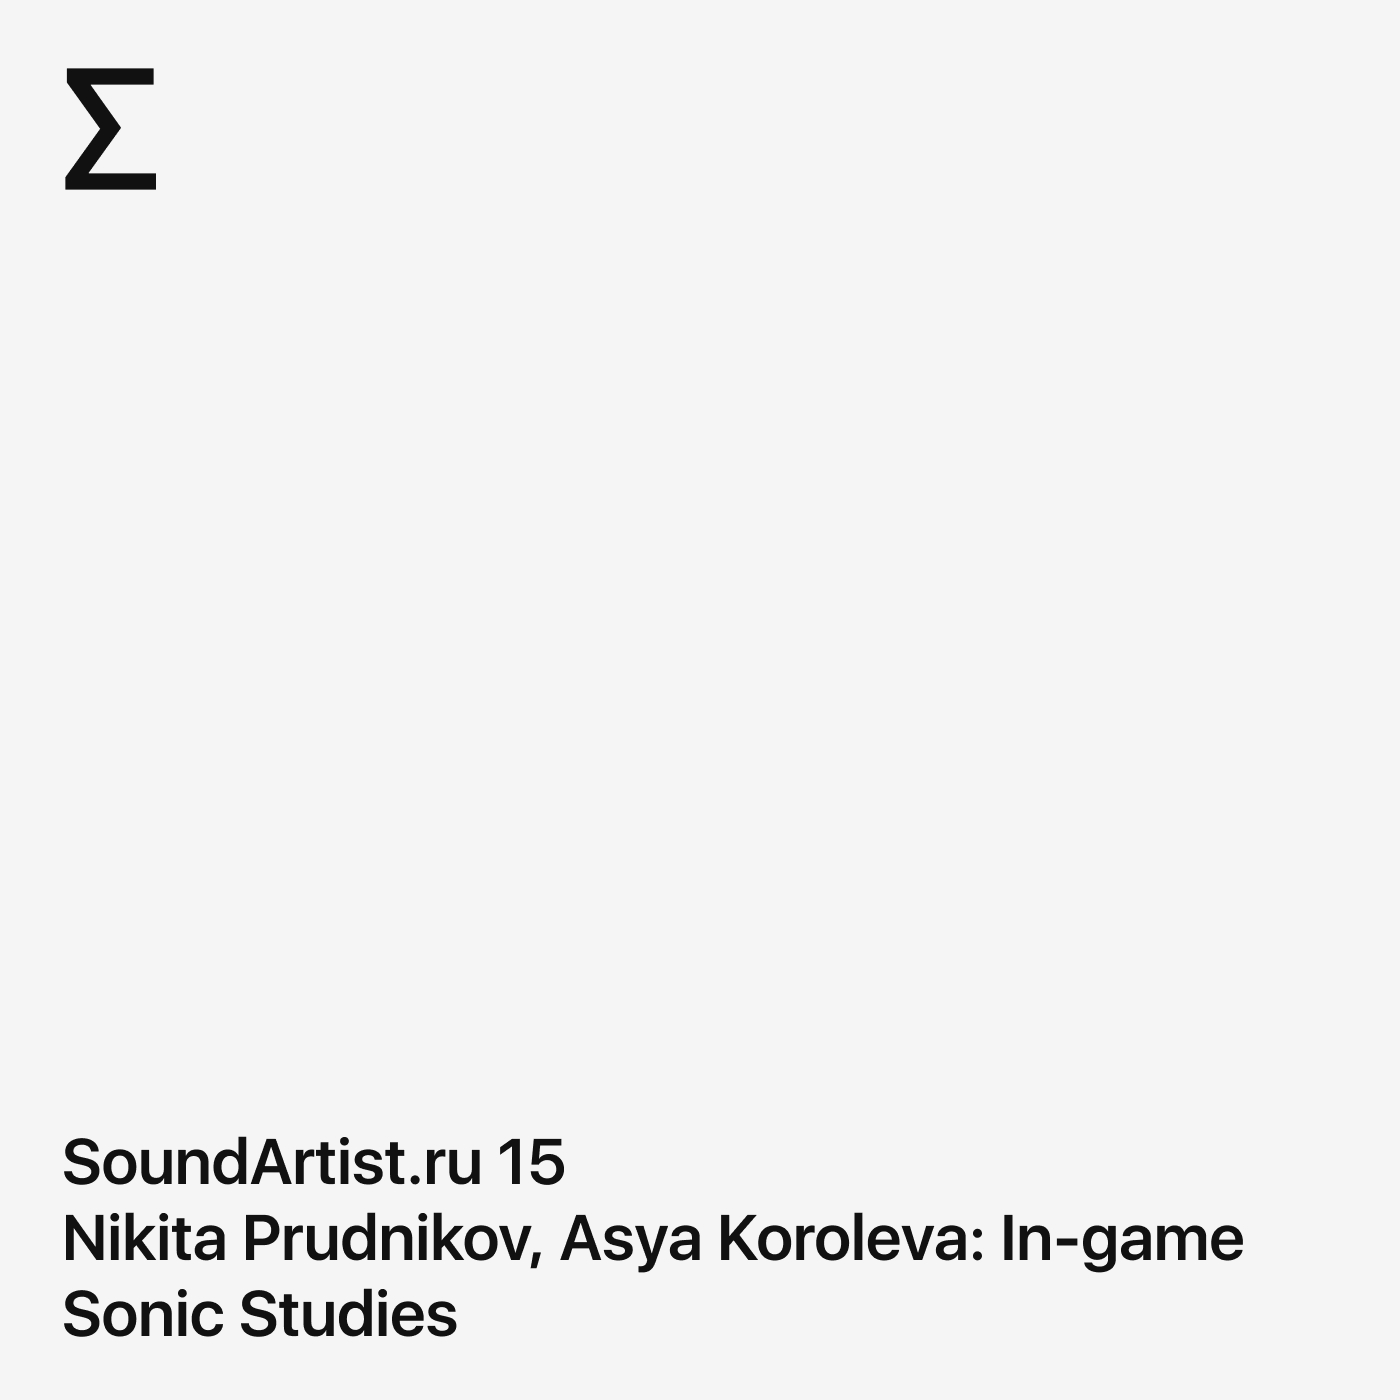 SoundArtist.ru 15 – Nikita Prudnikov, Asya Koroleva: In-game Sonic Studies